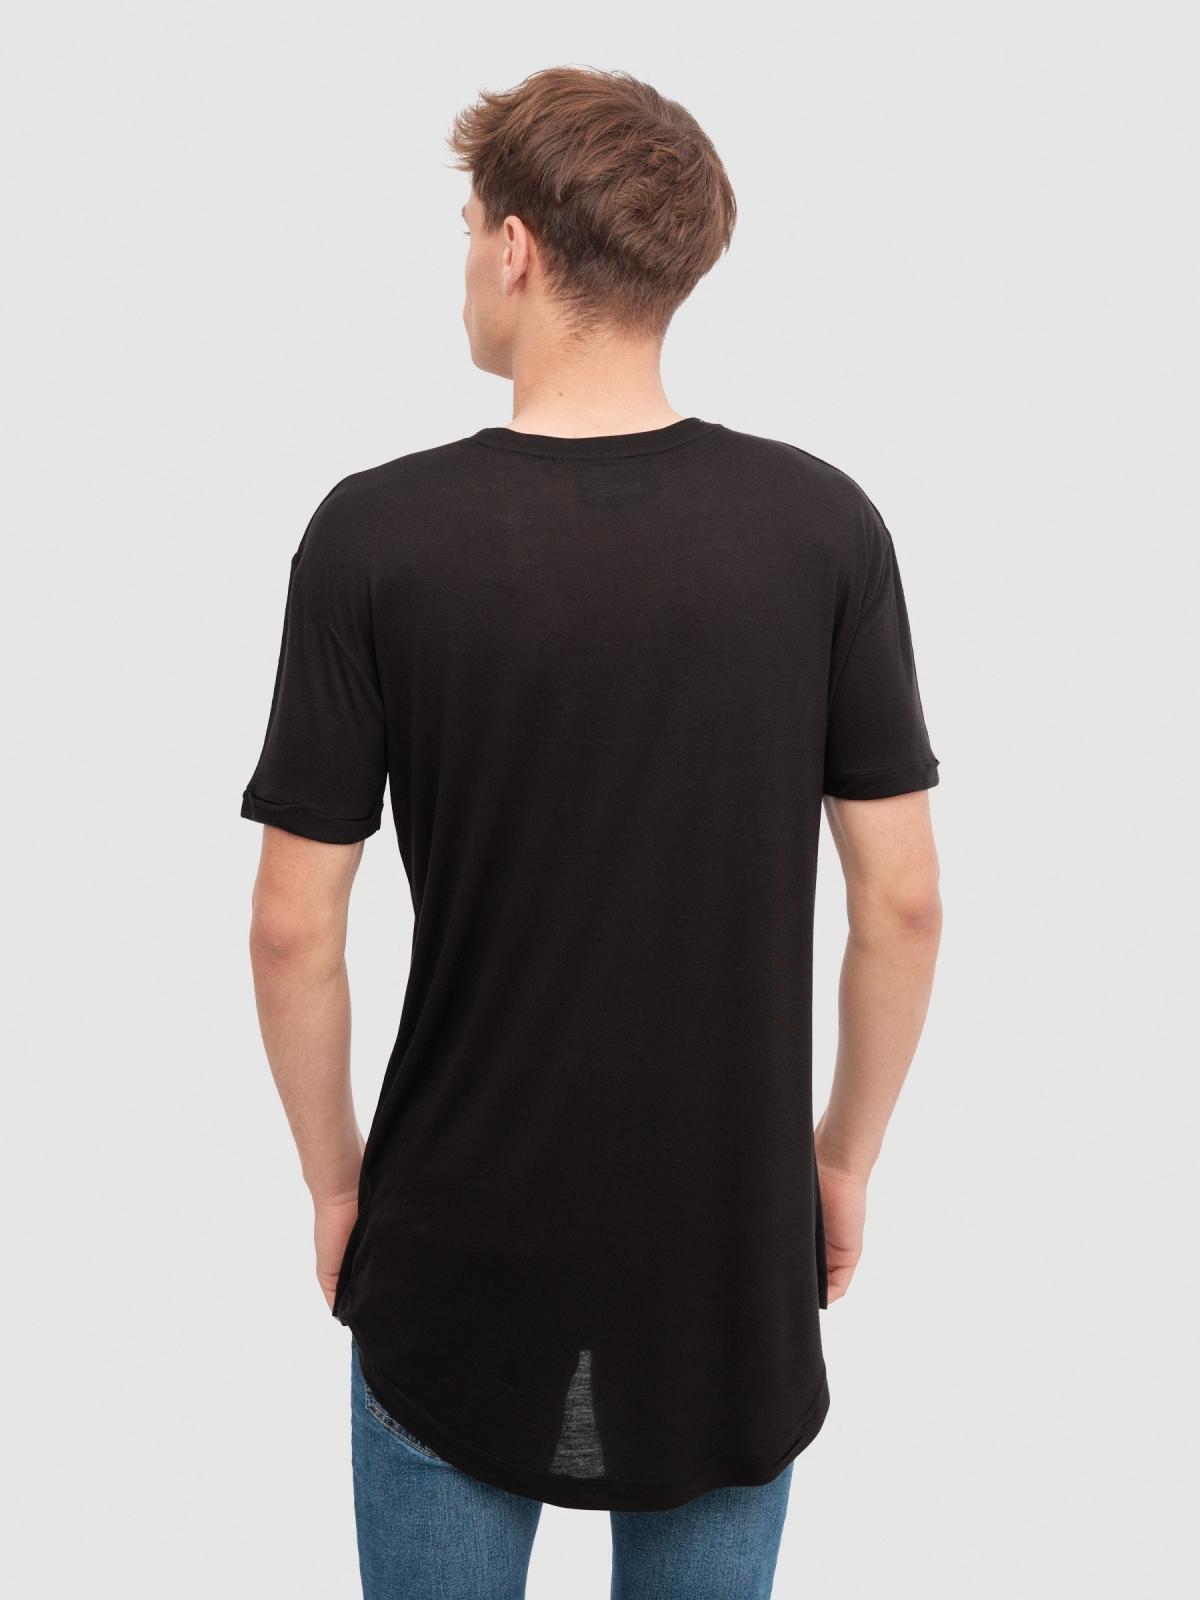 Camiseta larga básica negro vista media trasera